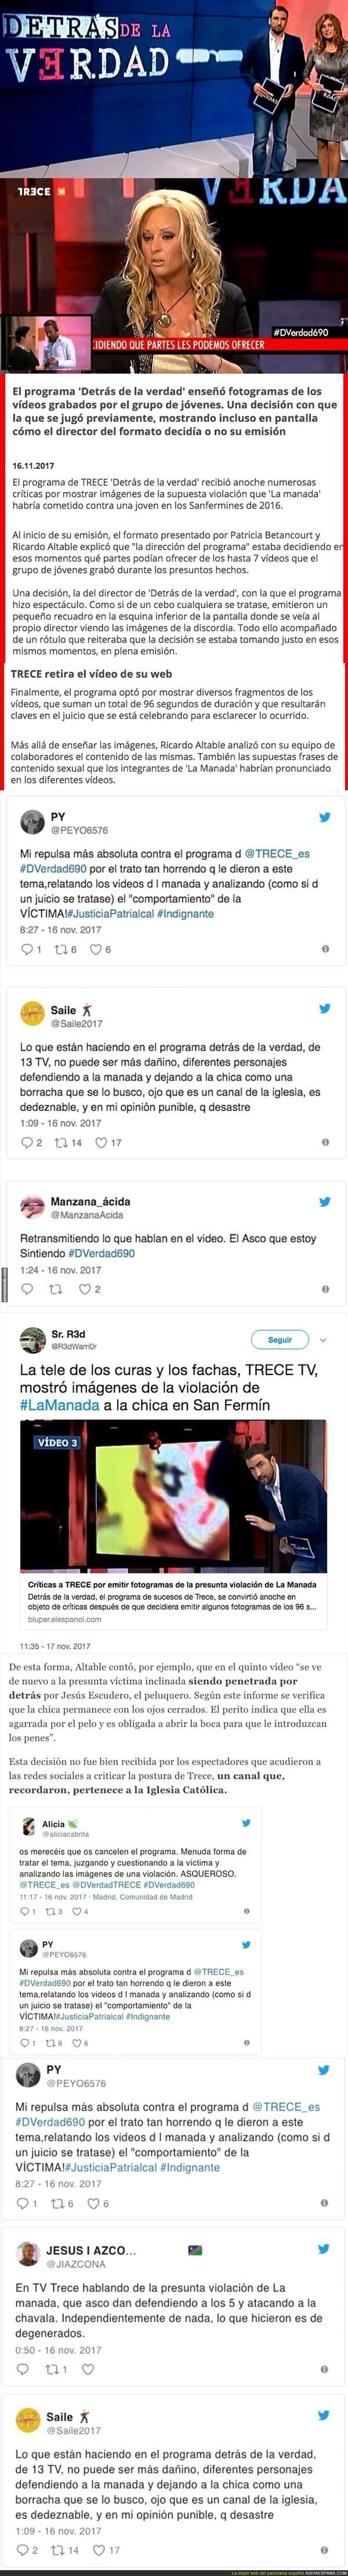 13TV escandaliza a todo el mundo mostrando imágenes de la violación de la chica de San Fermín